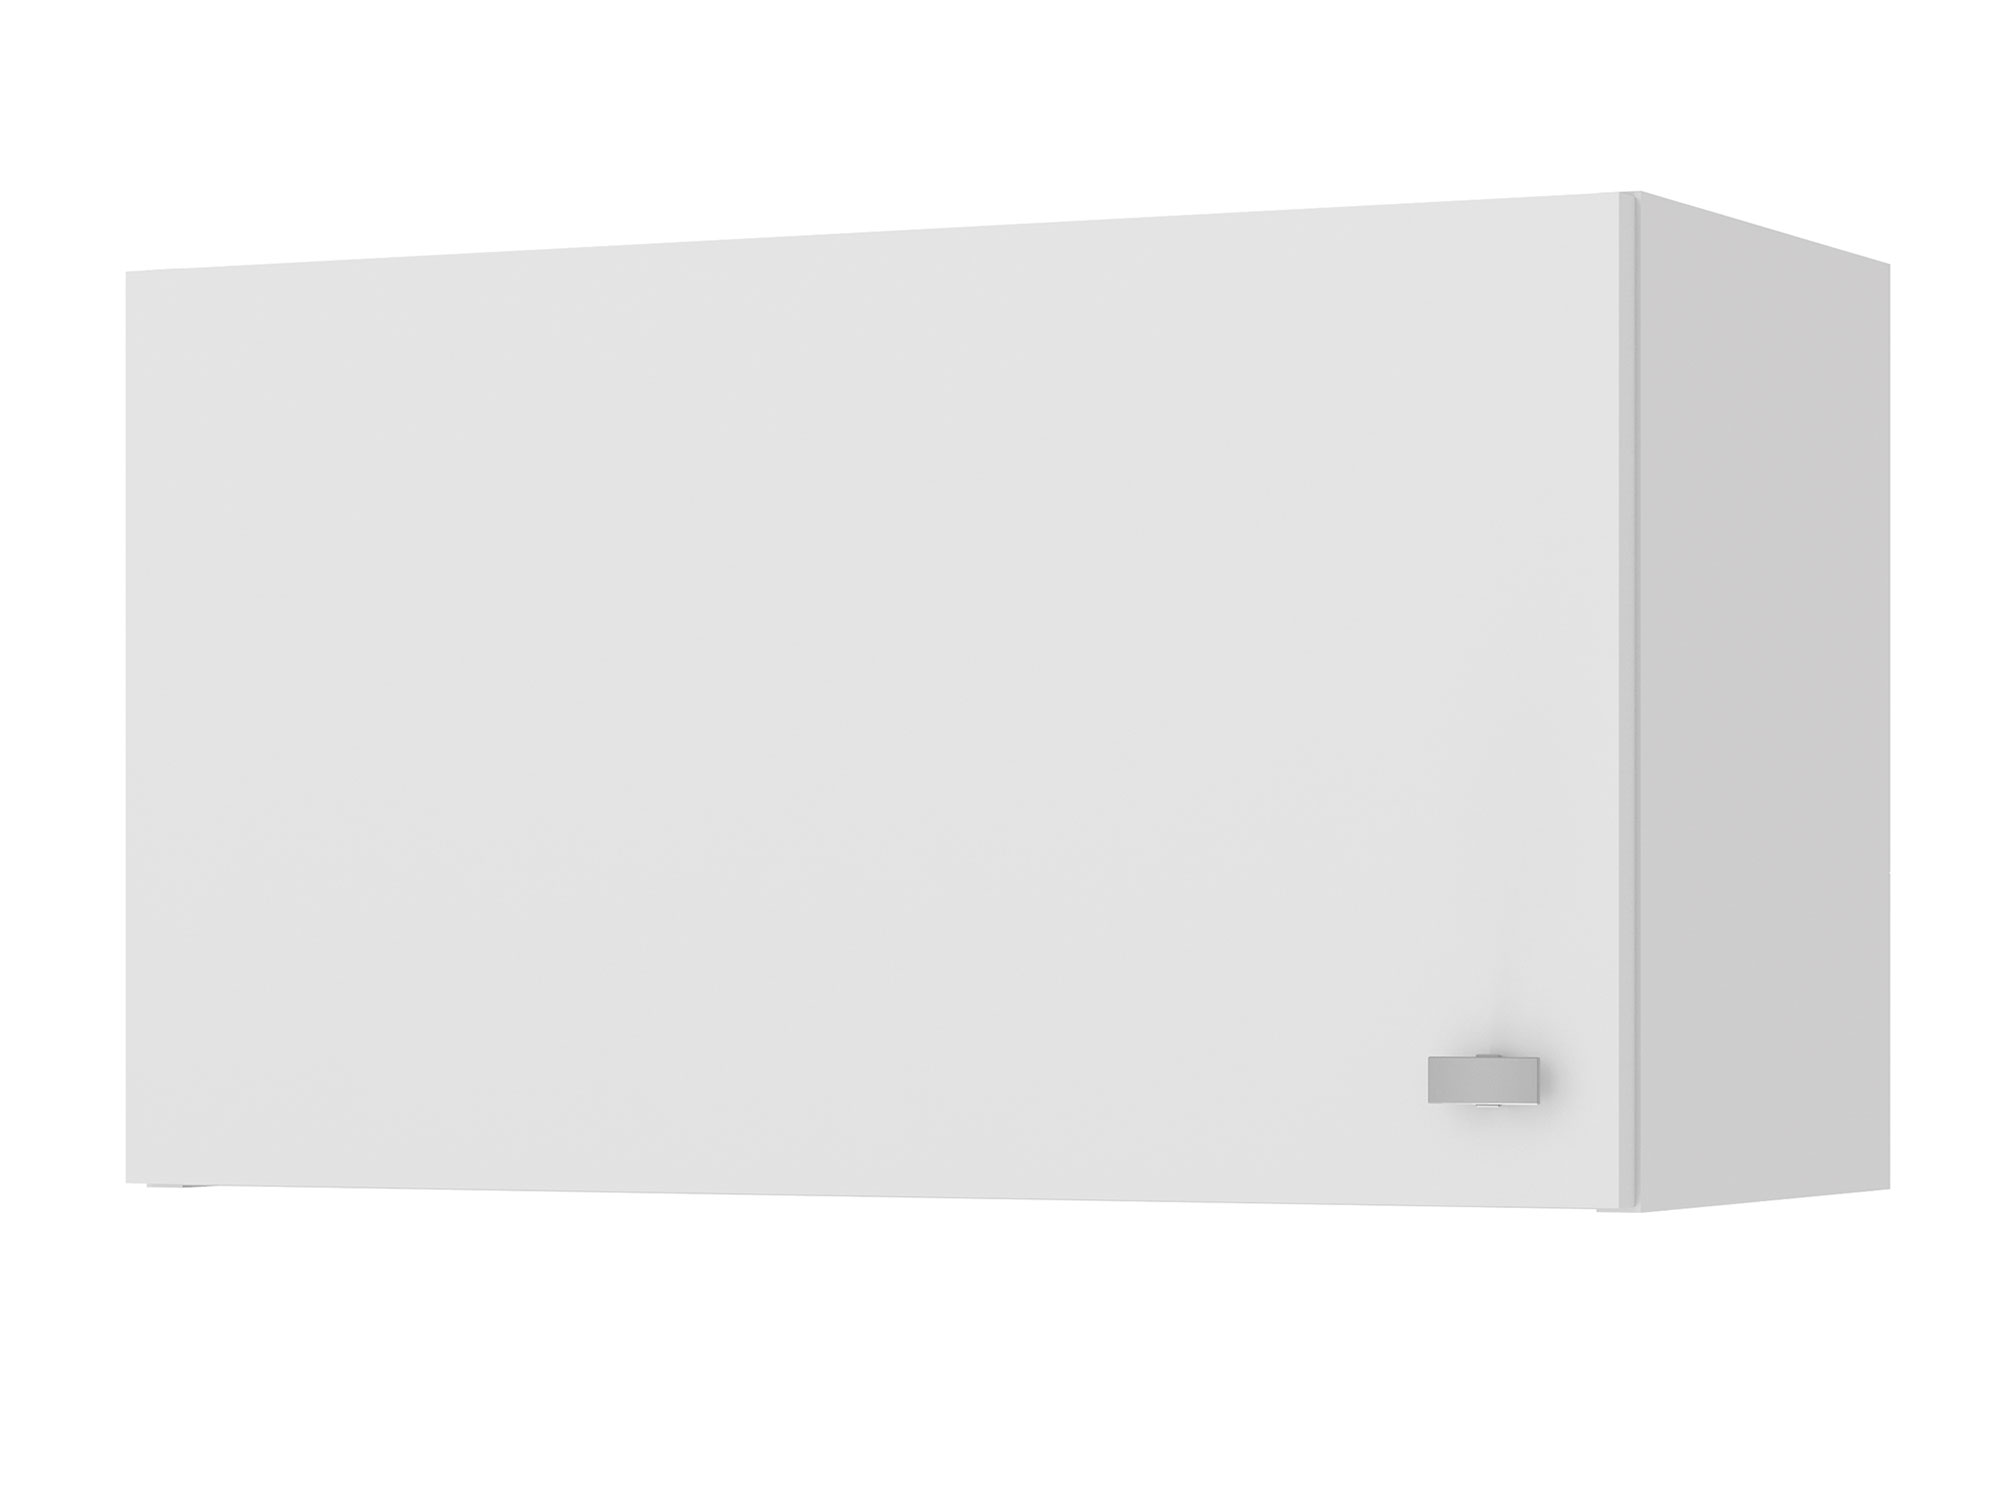 Скай шкаф навесной для вытяжки, 60 см Белый, ЛДСП шкаф навесной для вытяжки рондо 60 см ясень патина серебро белый мдф пленка пвх лдсп